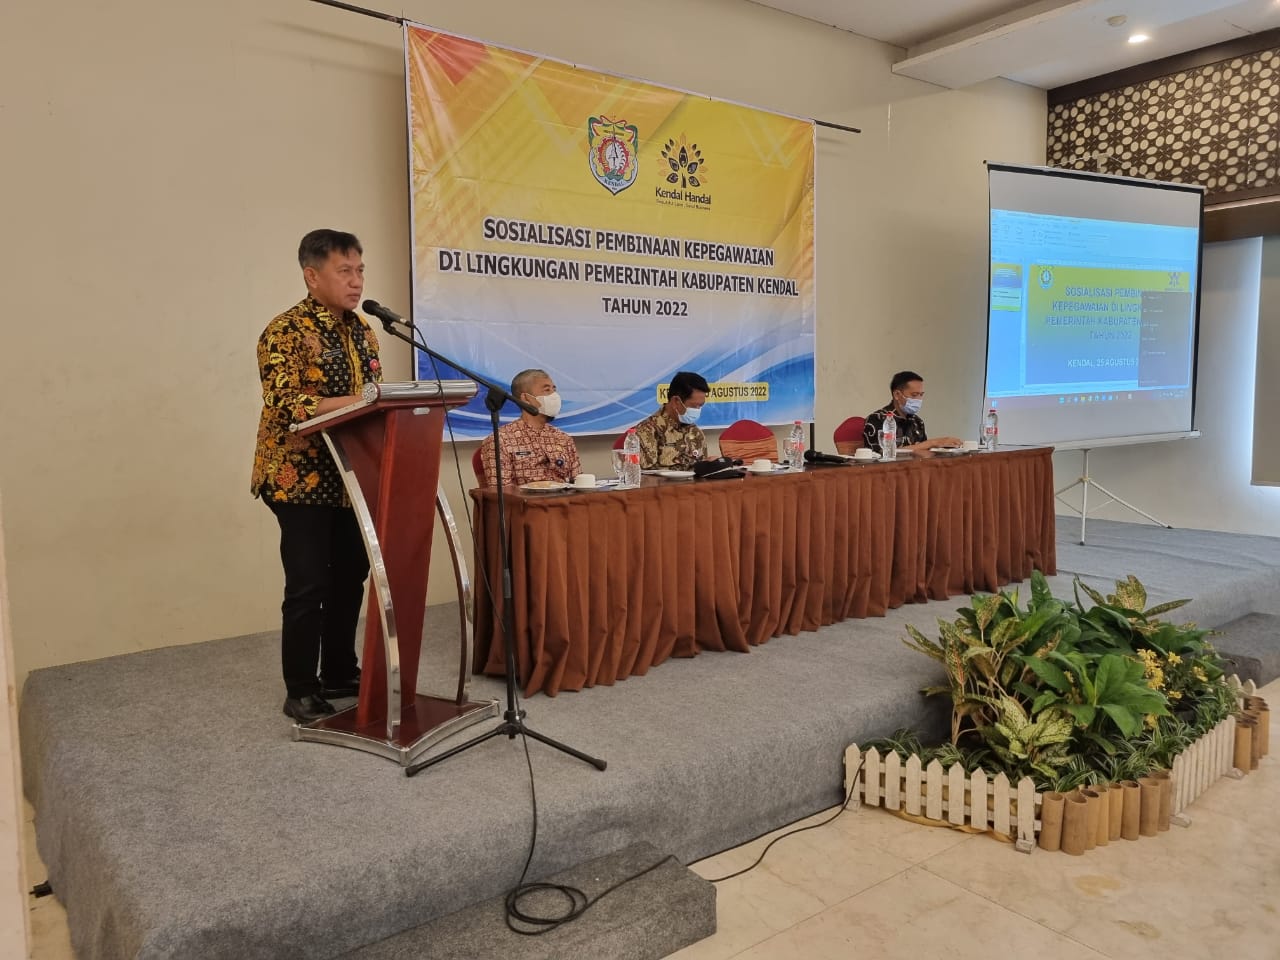 Sosialisasi Pembinaan Kepegawaian di Lingkungan Pemerintah Kabupaten Kendal Tahun 2022